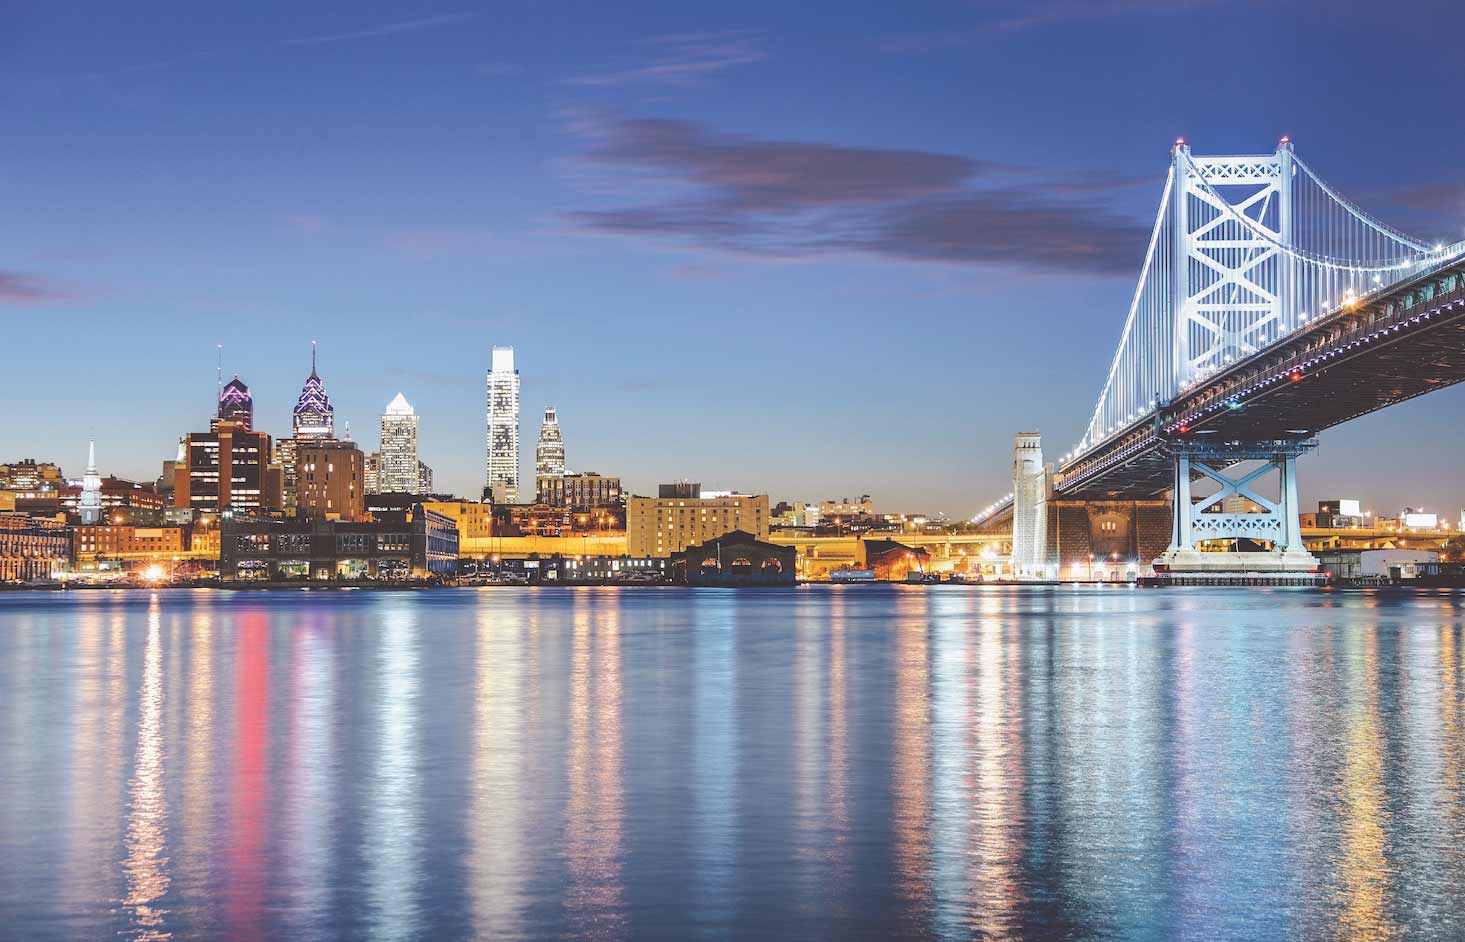 费城在黄昏时分的桥梁和城市景观。